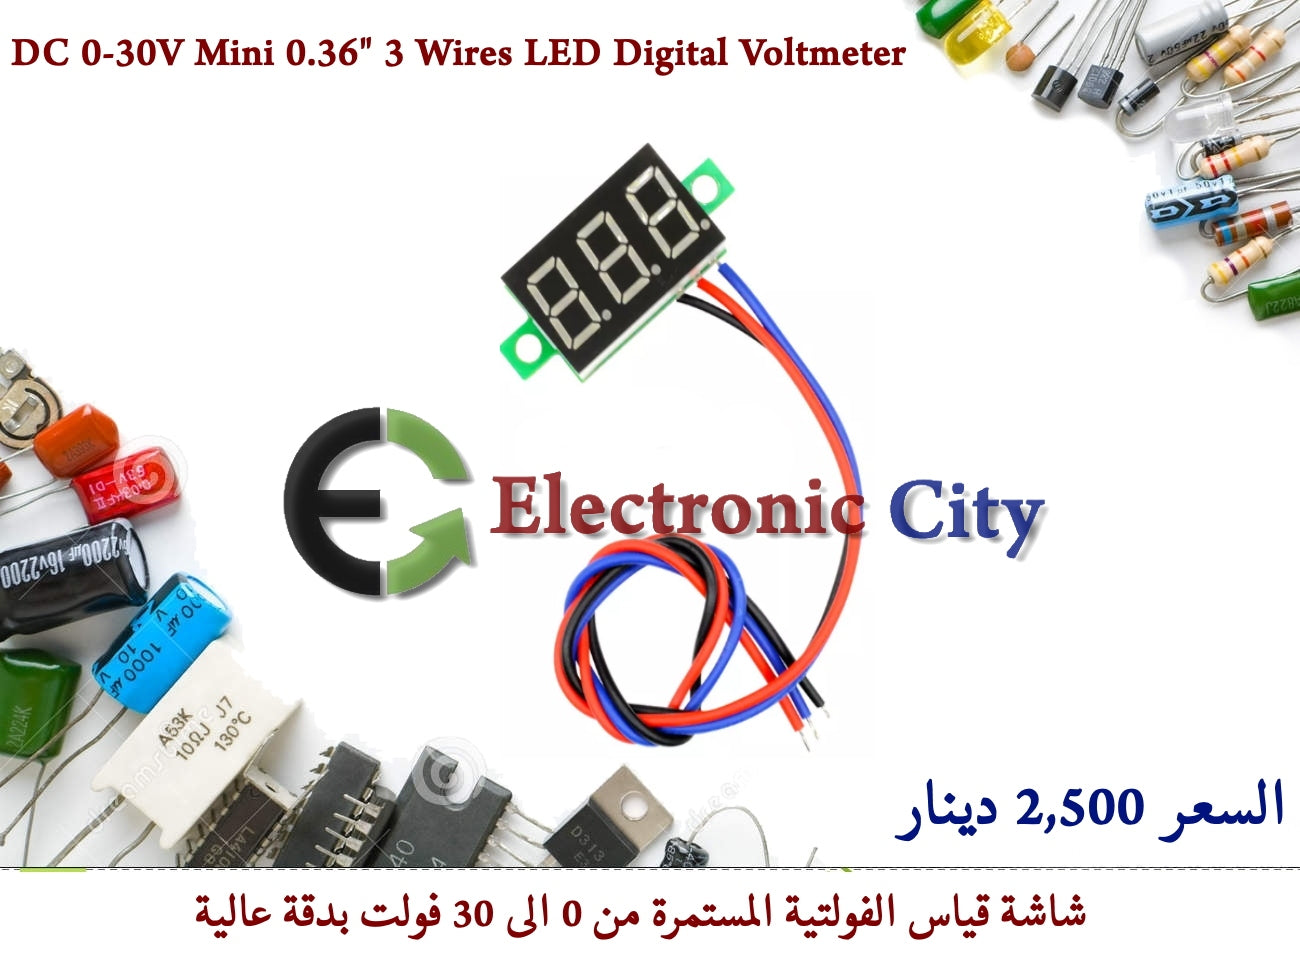 DC 0-30V Mini 0.36inch 3 Wires LED Display Digital Voltmeter #E10 030261HO